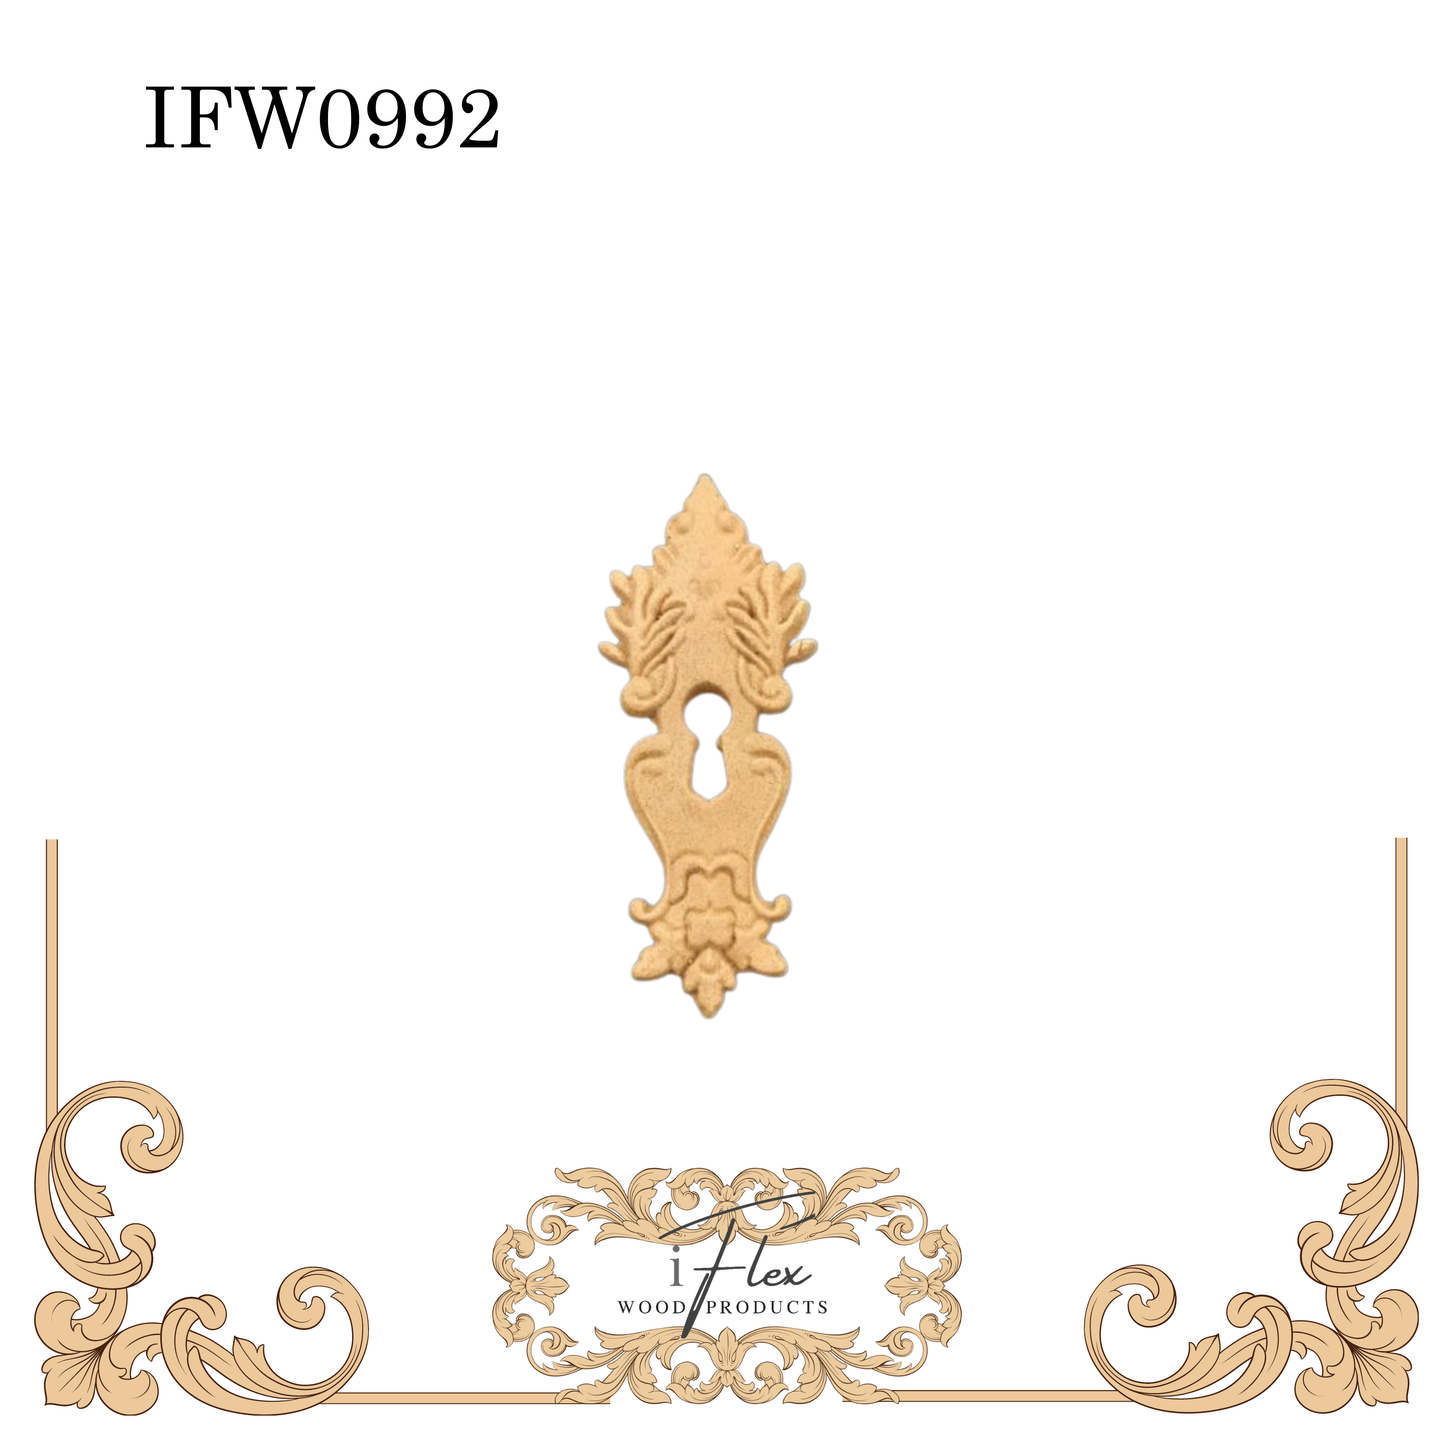 IFW 0992 Keyhole crafting embellishment, flexible moulding